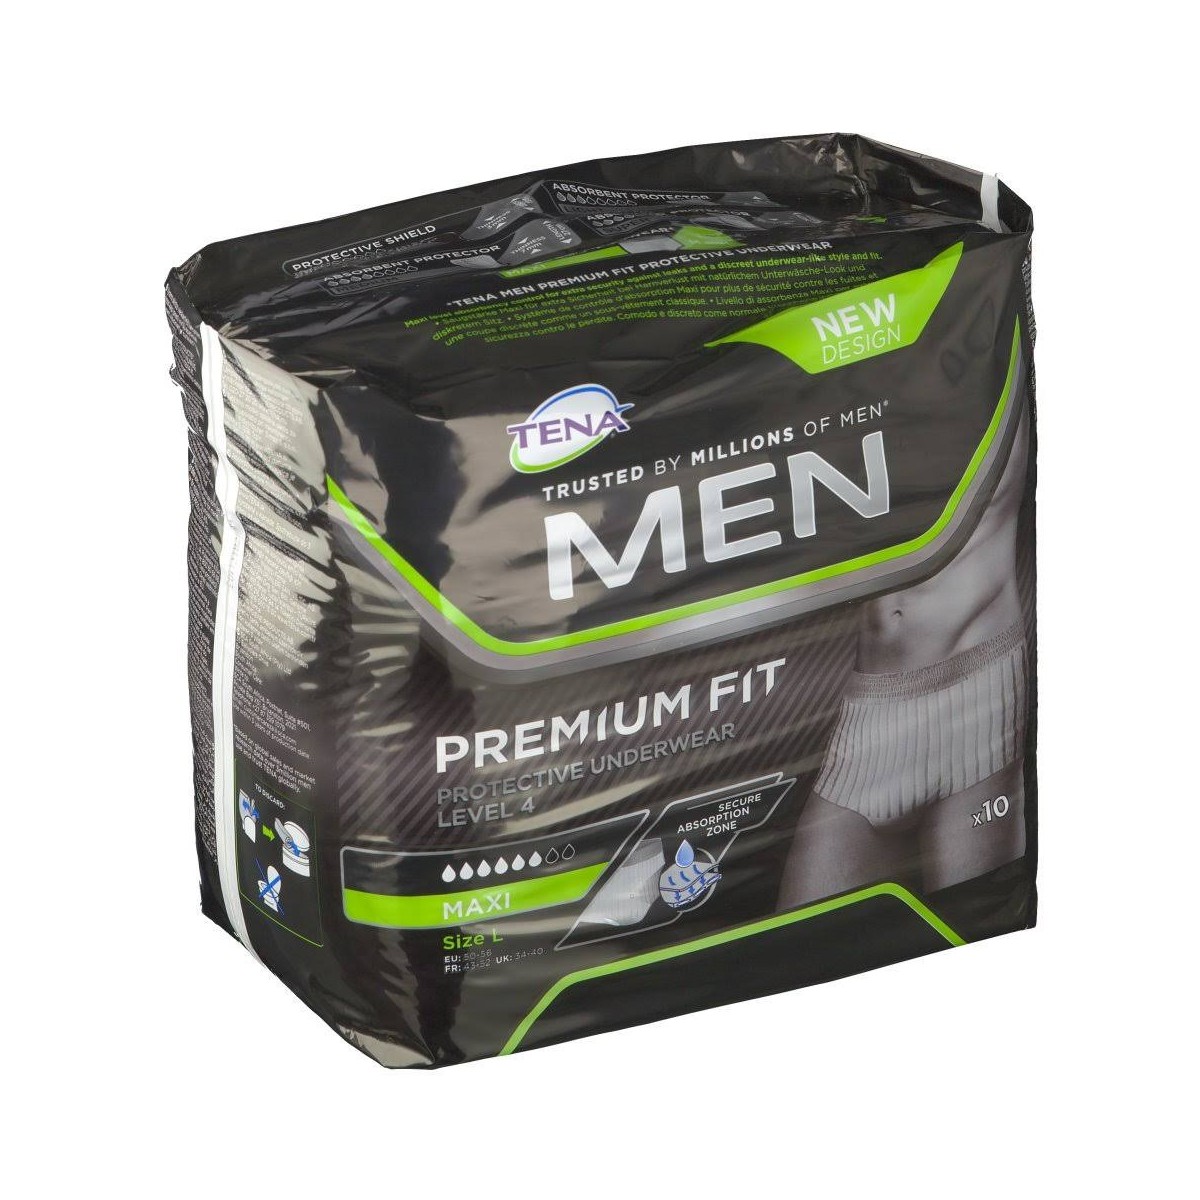 Tena Men Premium Fit Protective Underwear Level 4, Talla L 10 7322540886238